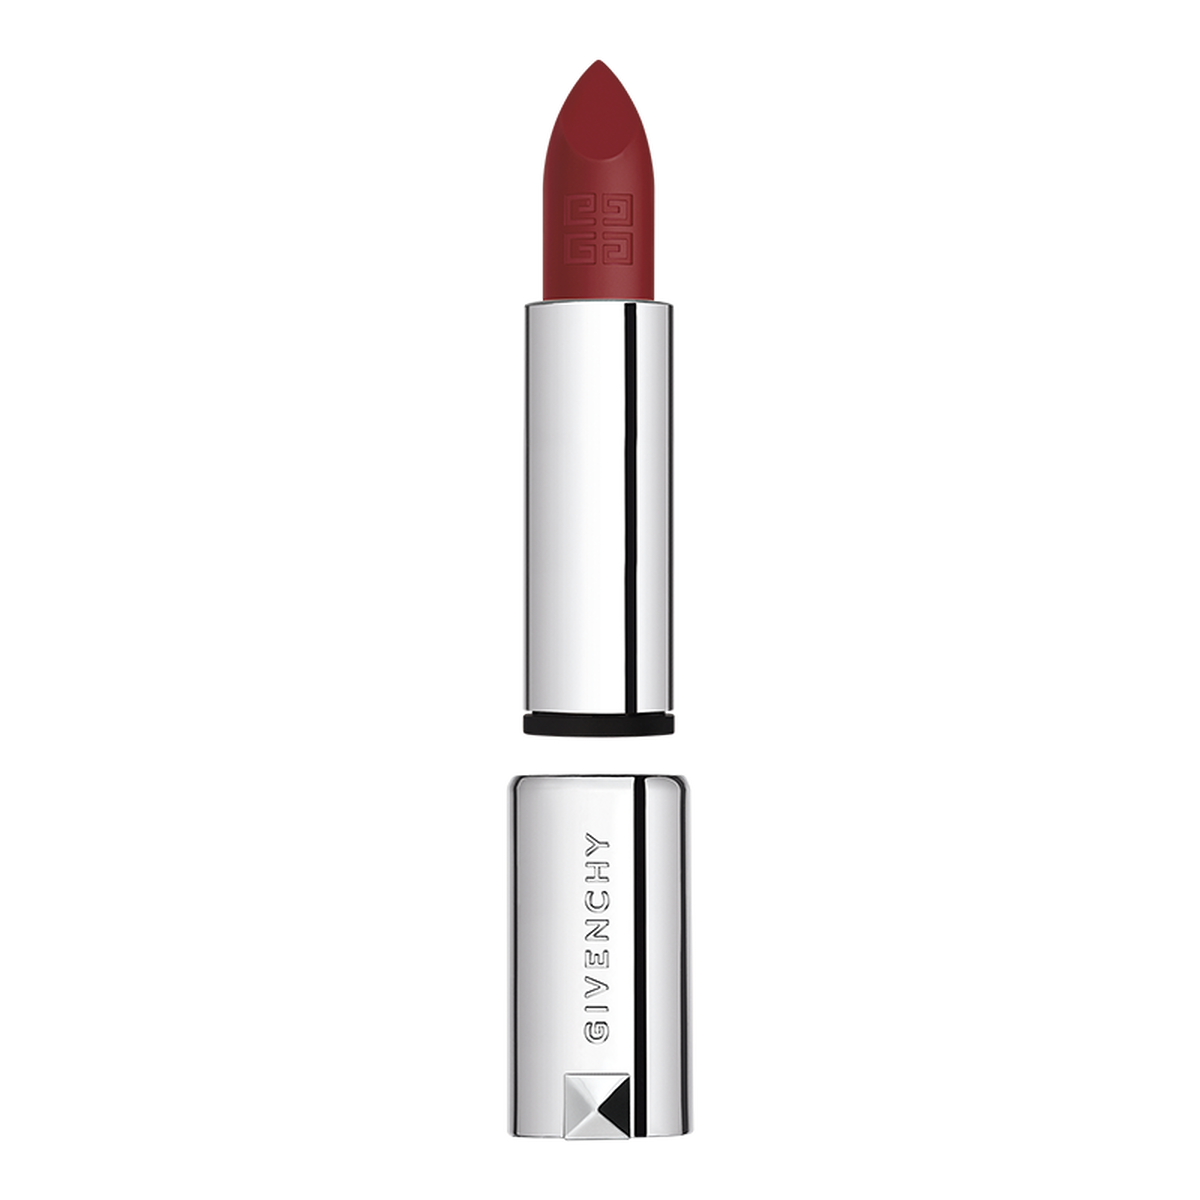 Le Rouge Sheer Velvet Matte Lipstick - Lipstick